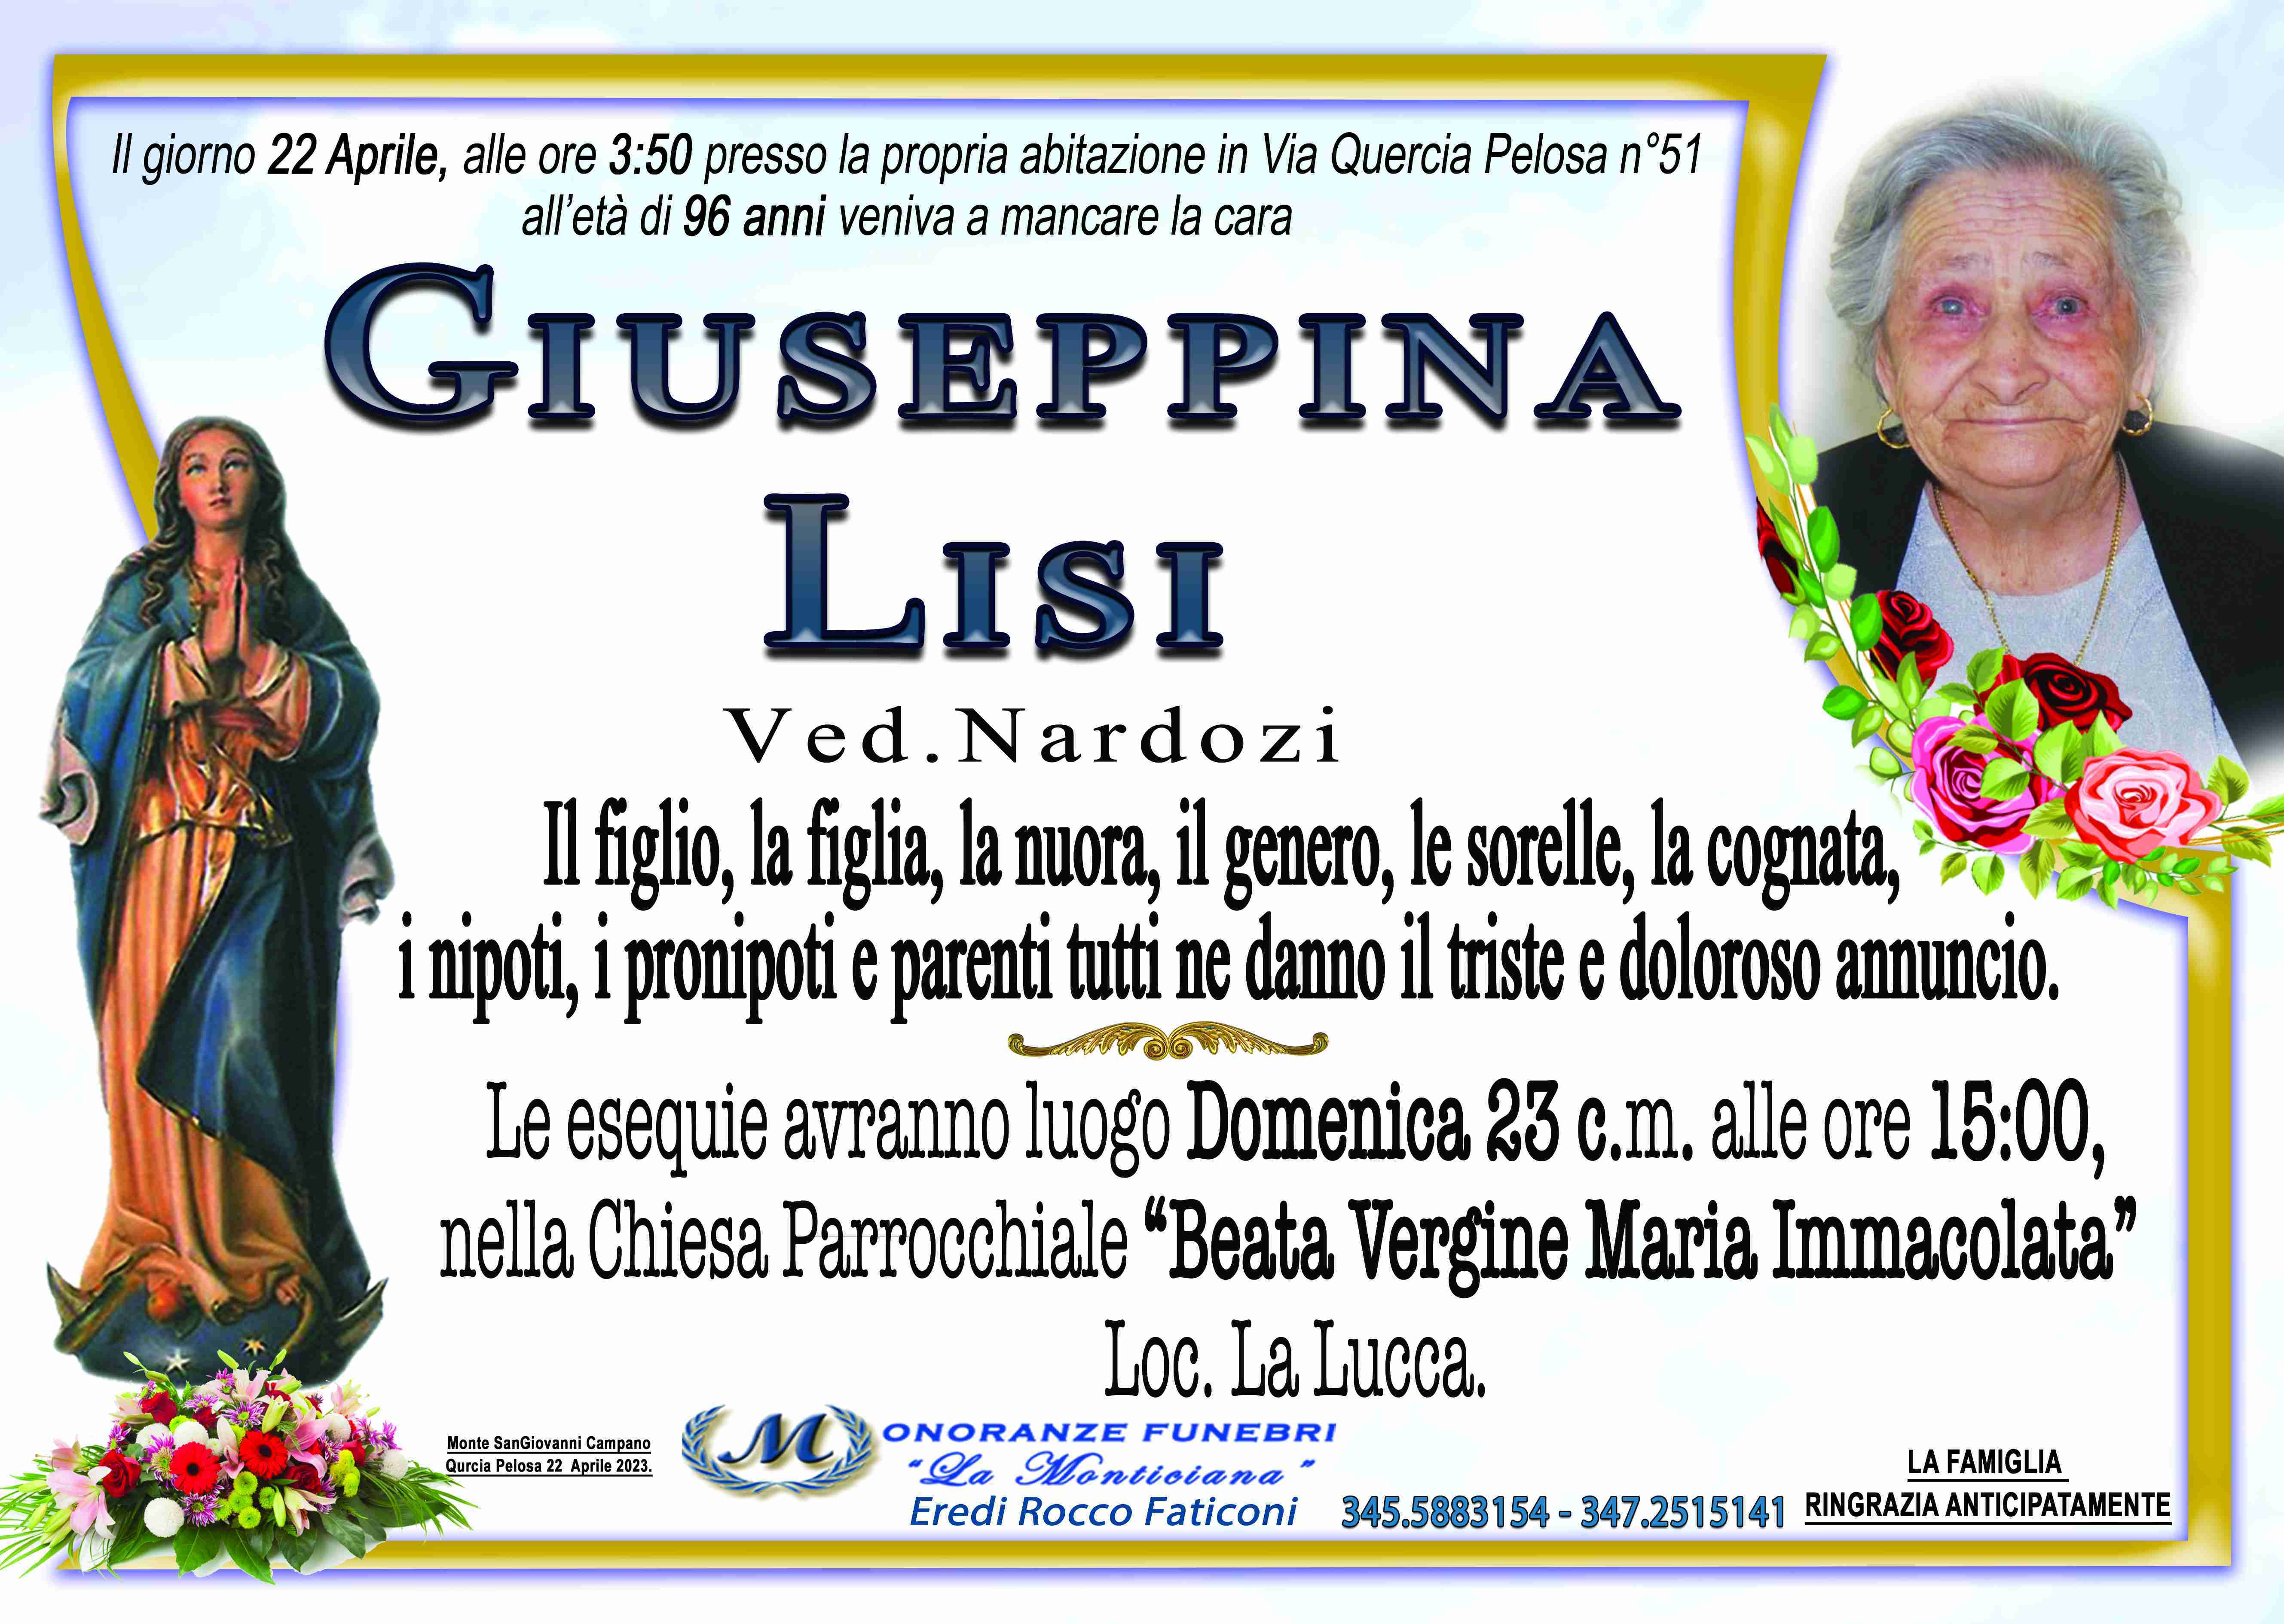 Giuseppina Lisi